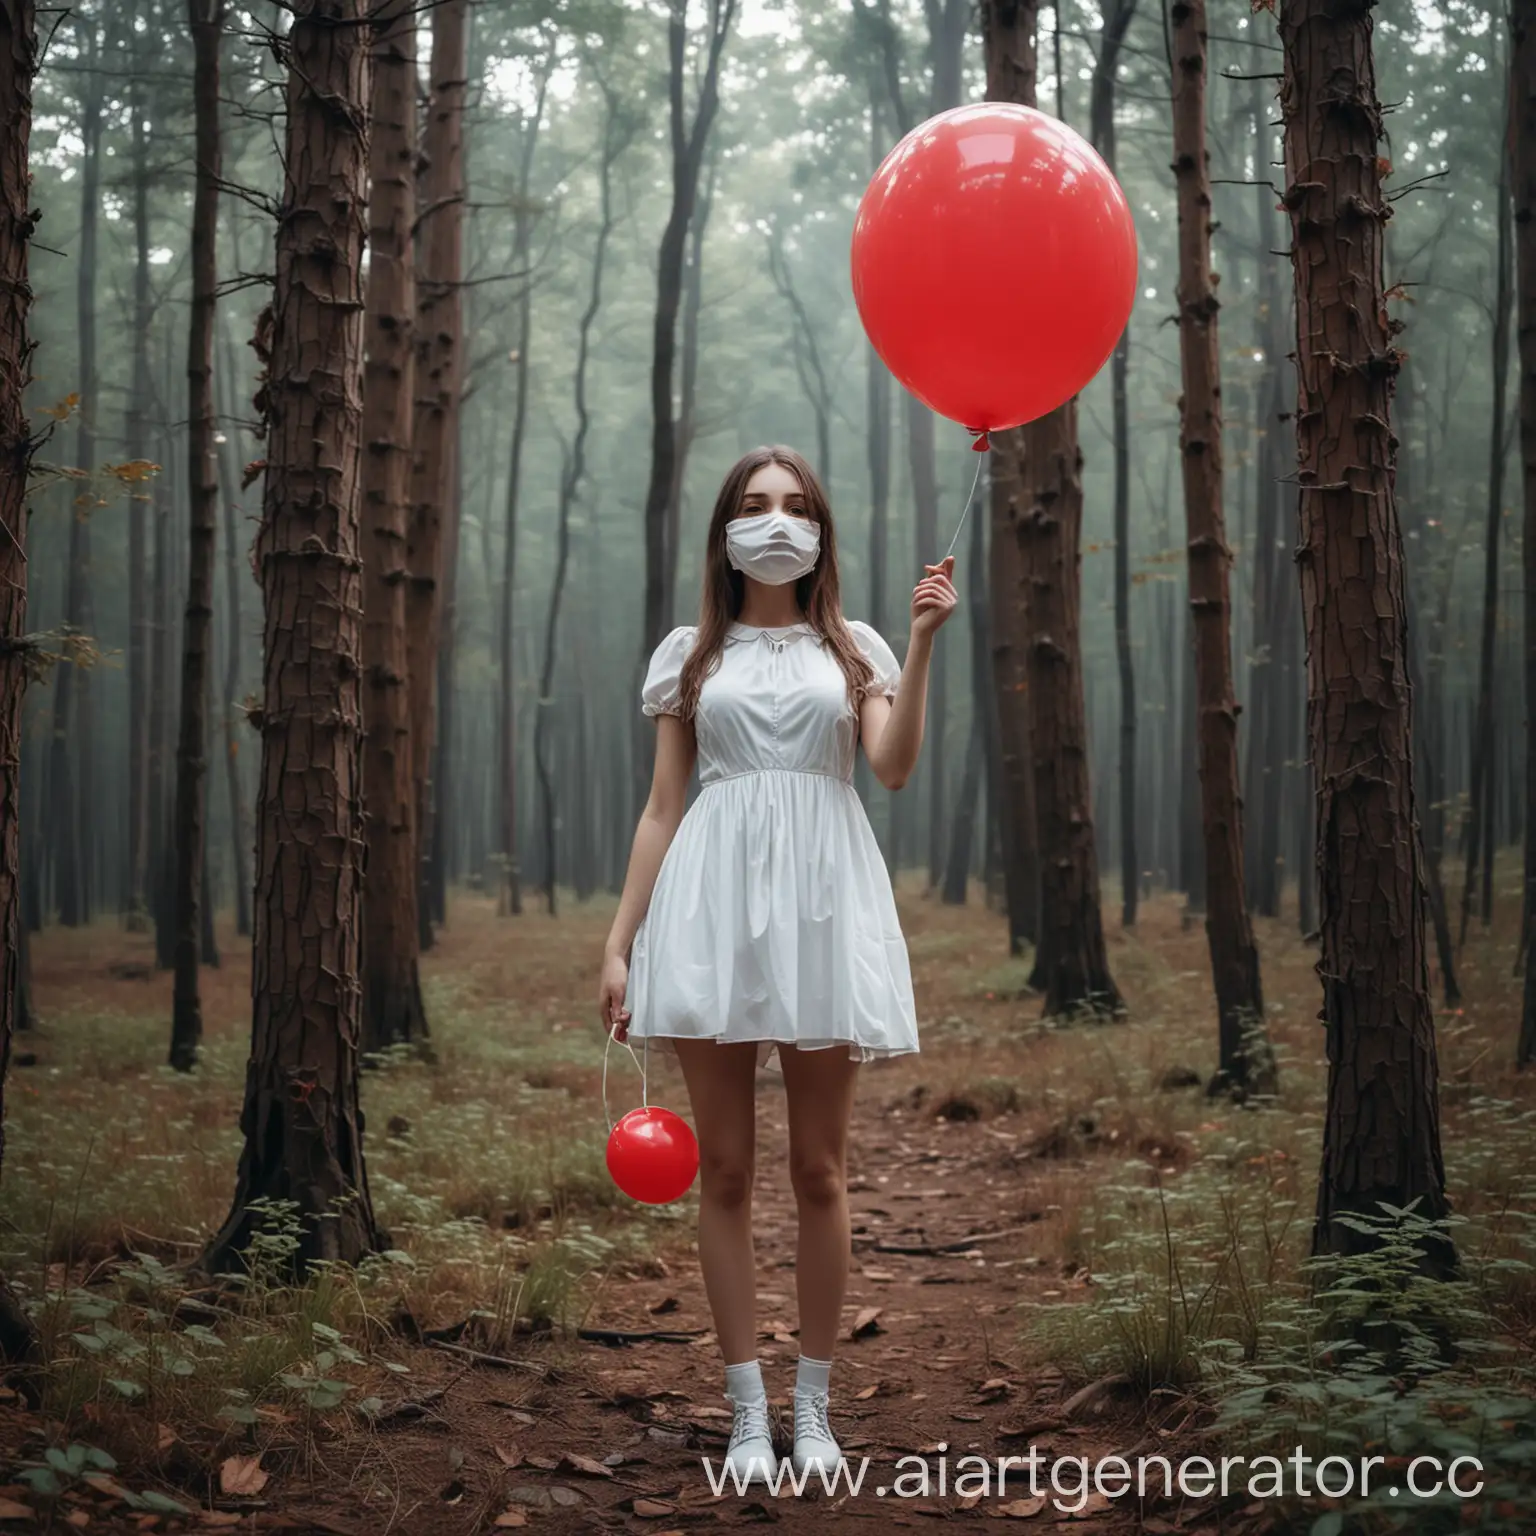 Сгенерируй девушку в белом, легком коротком платье которое стоит посреди леса и держит в руке сдутый, то есть опущенный вниз, красный шарик при этом на её лице белая маска.